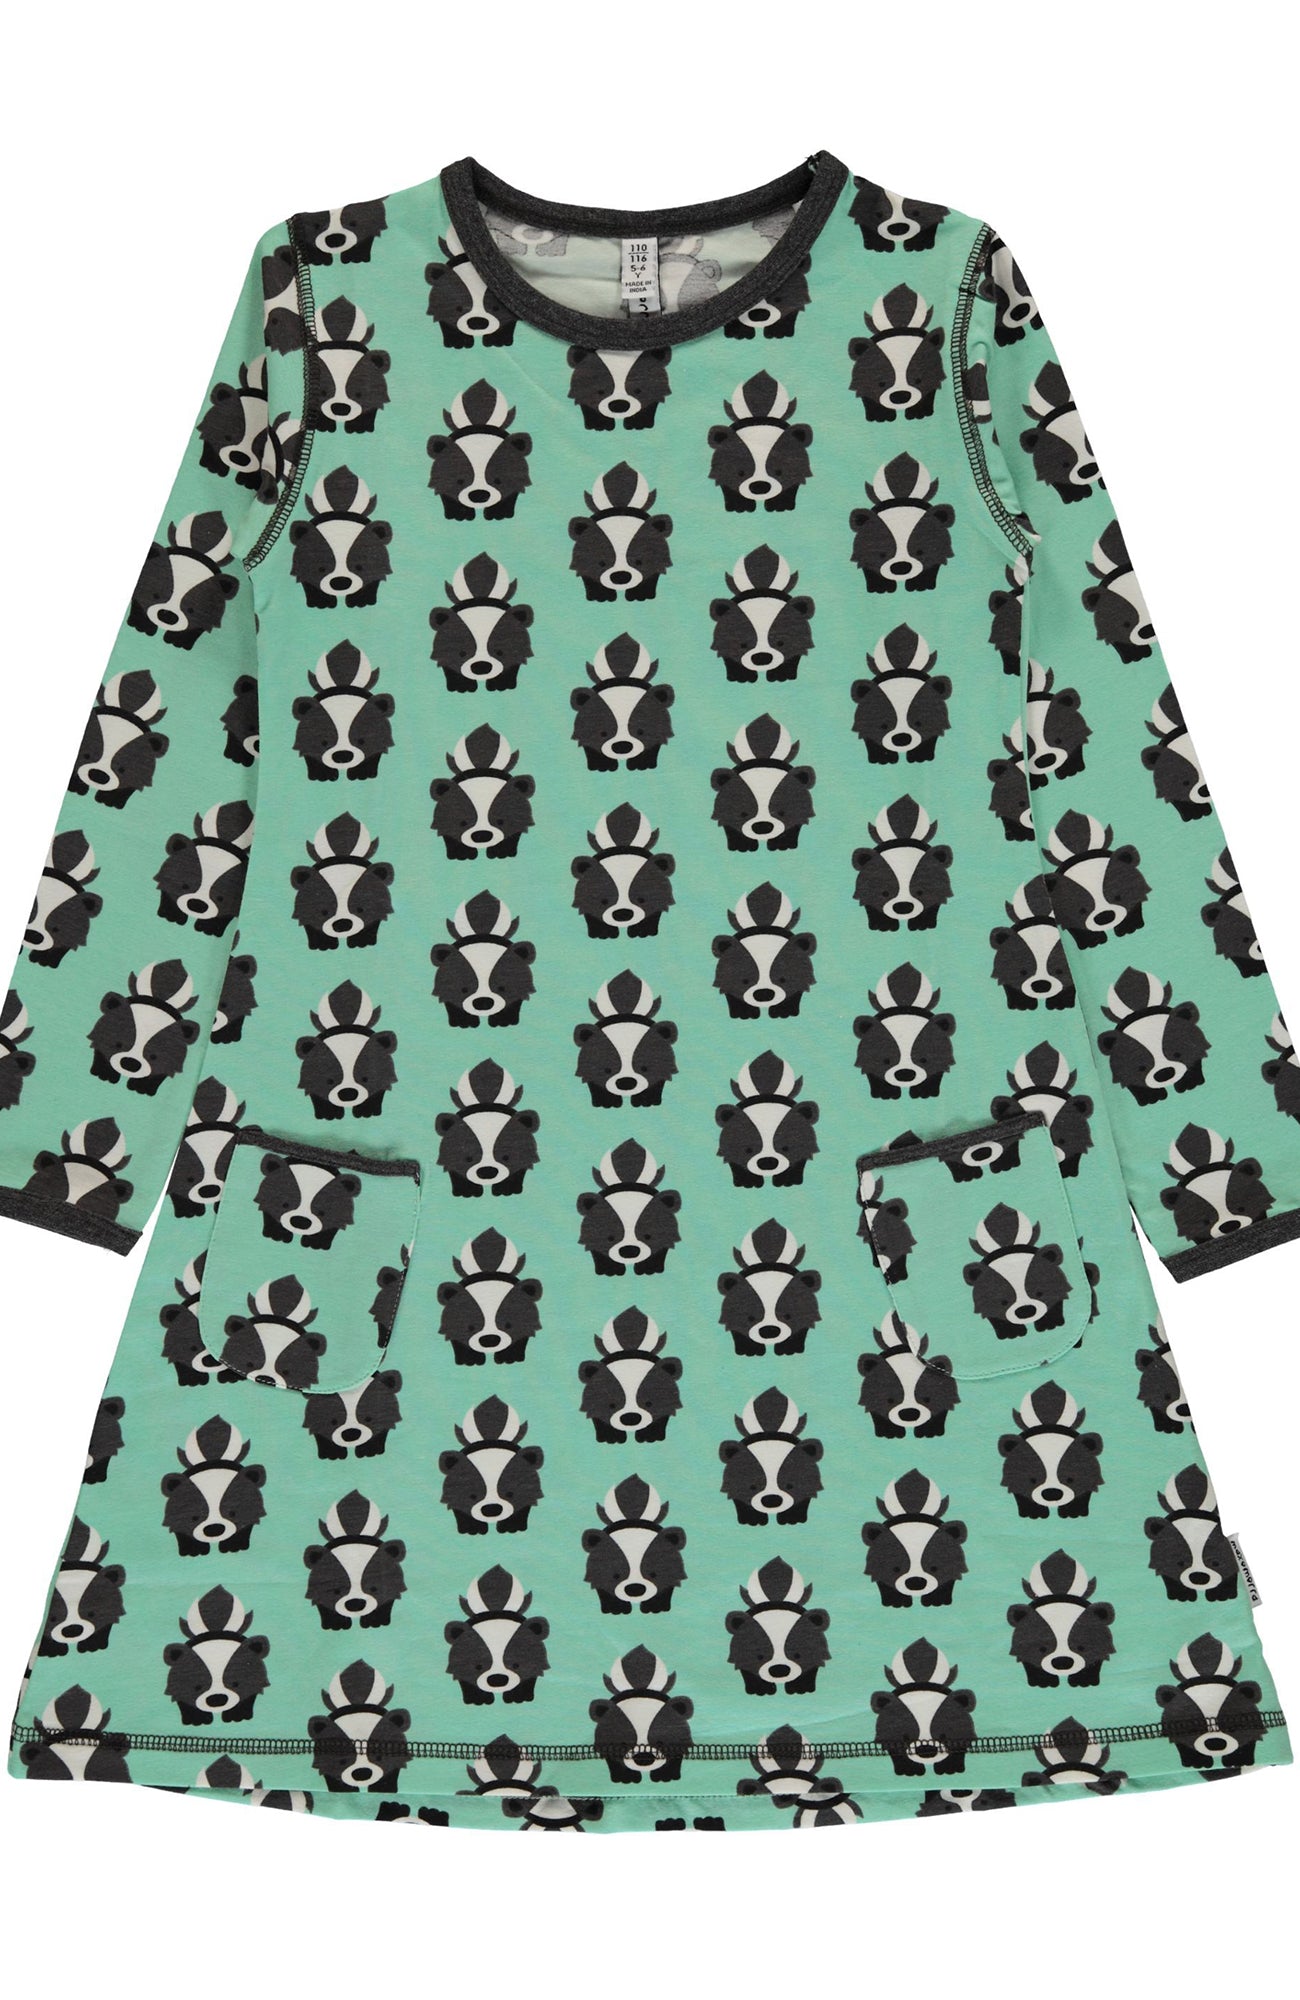 Children's Skunk Dress - Maxomorra (Last Available)